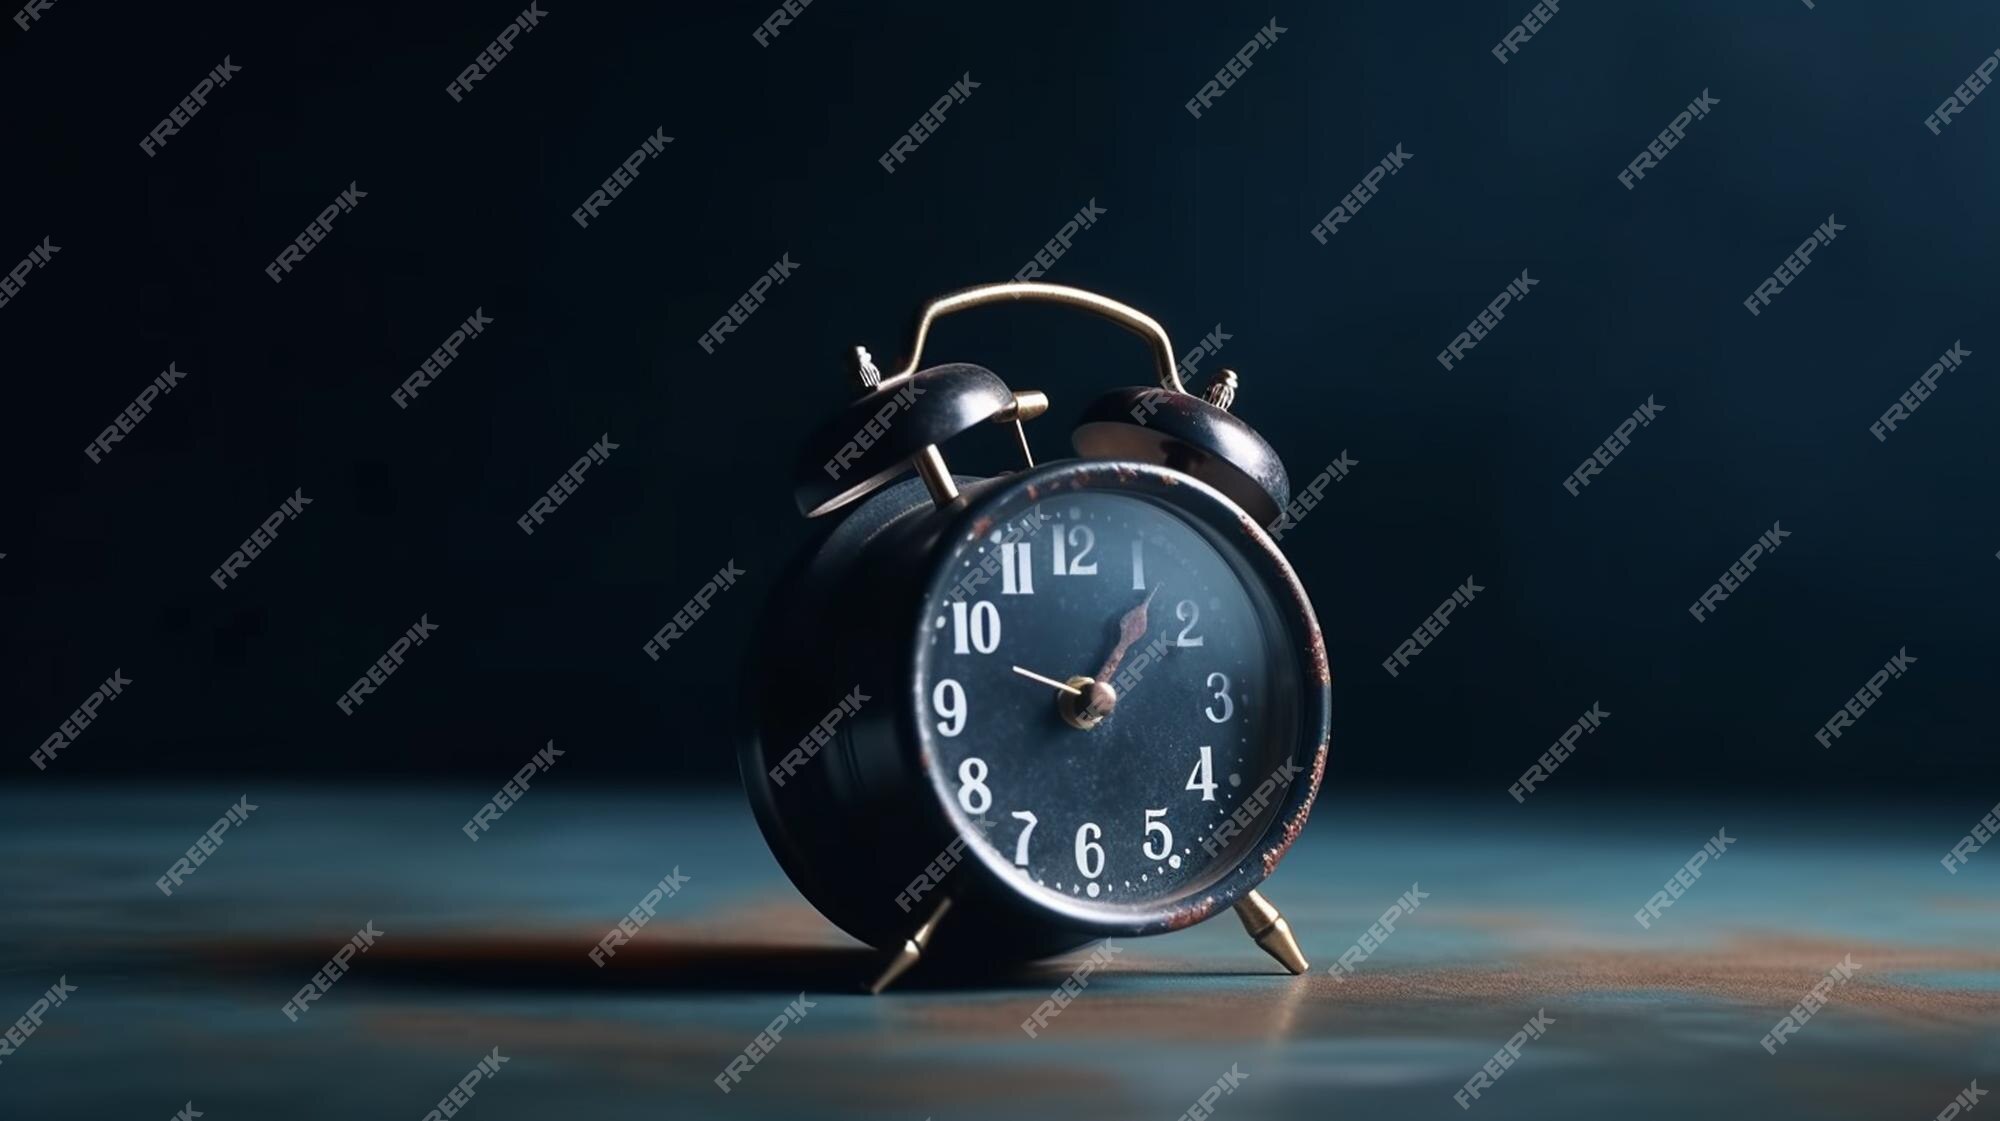 45 Segundos ícone Do Despertador De 45 Minutos Ou 9 Horas Verde E Preto  Ilustração Stock - Ilustração de alarme, temporizador: 195343271